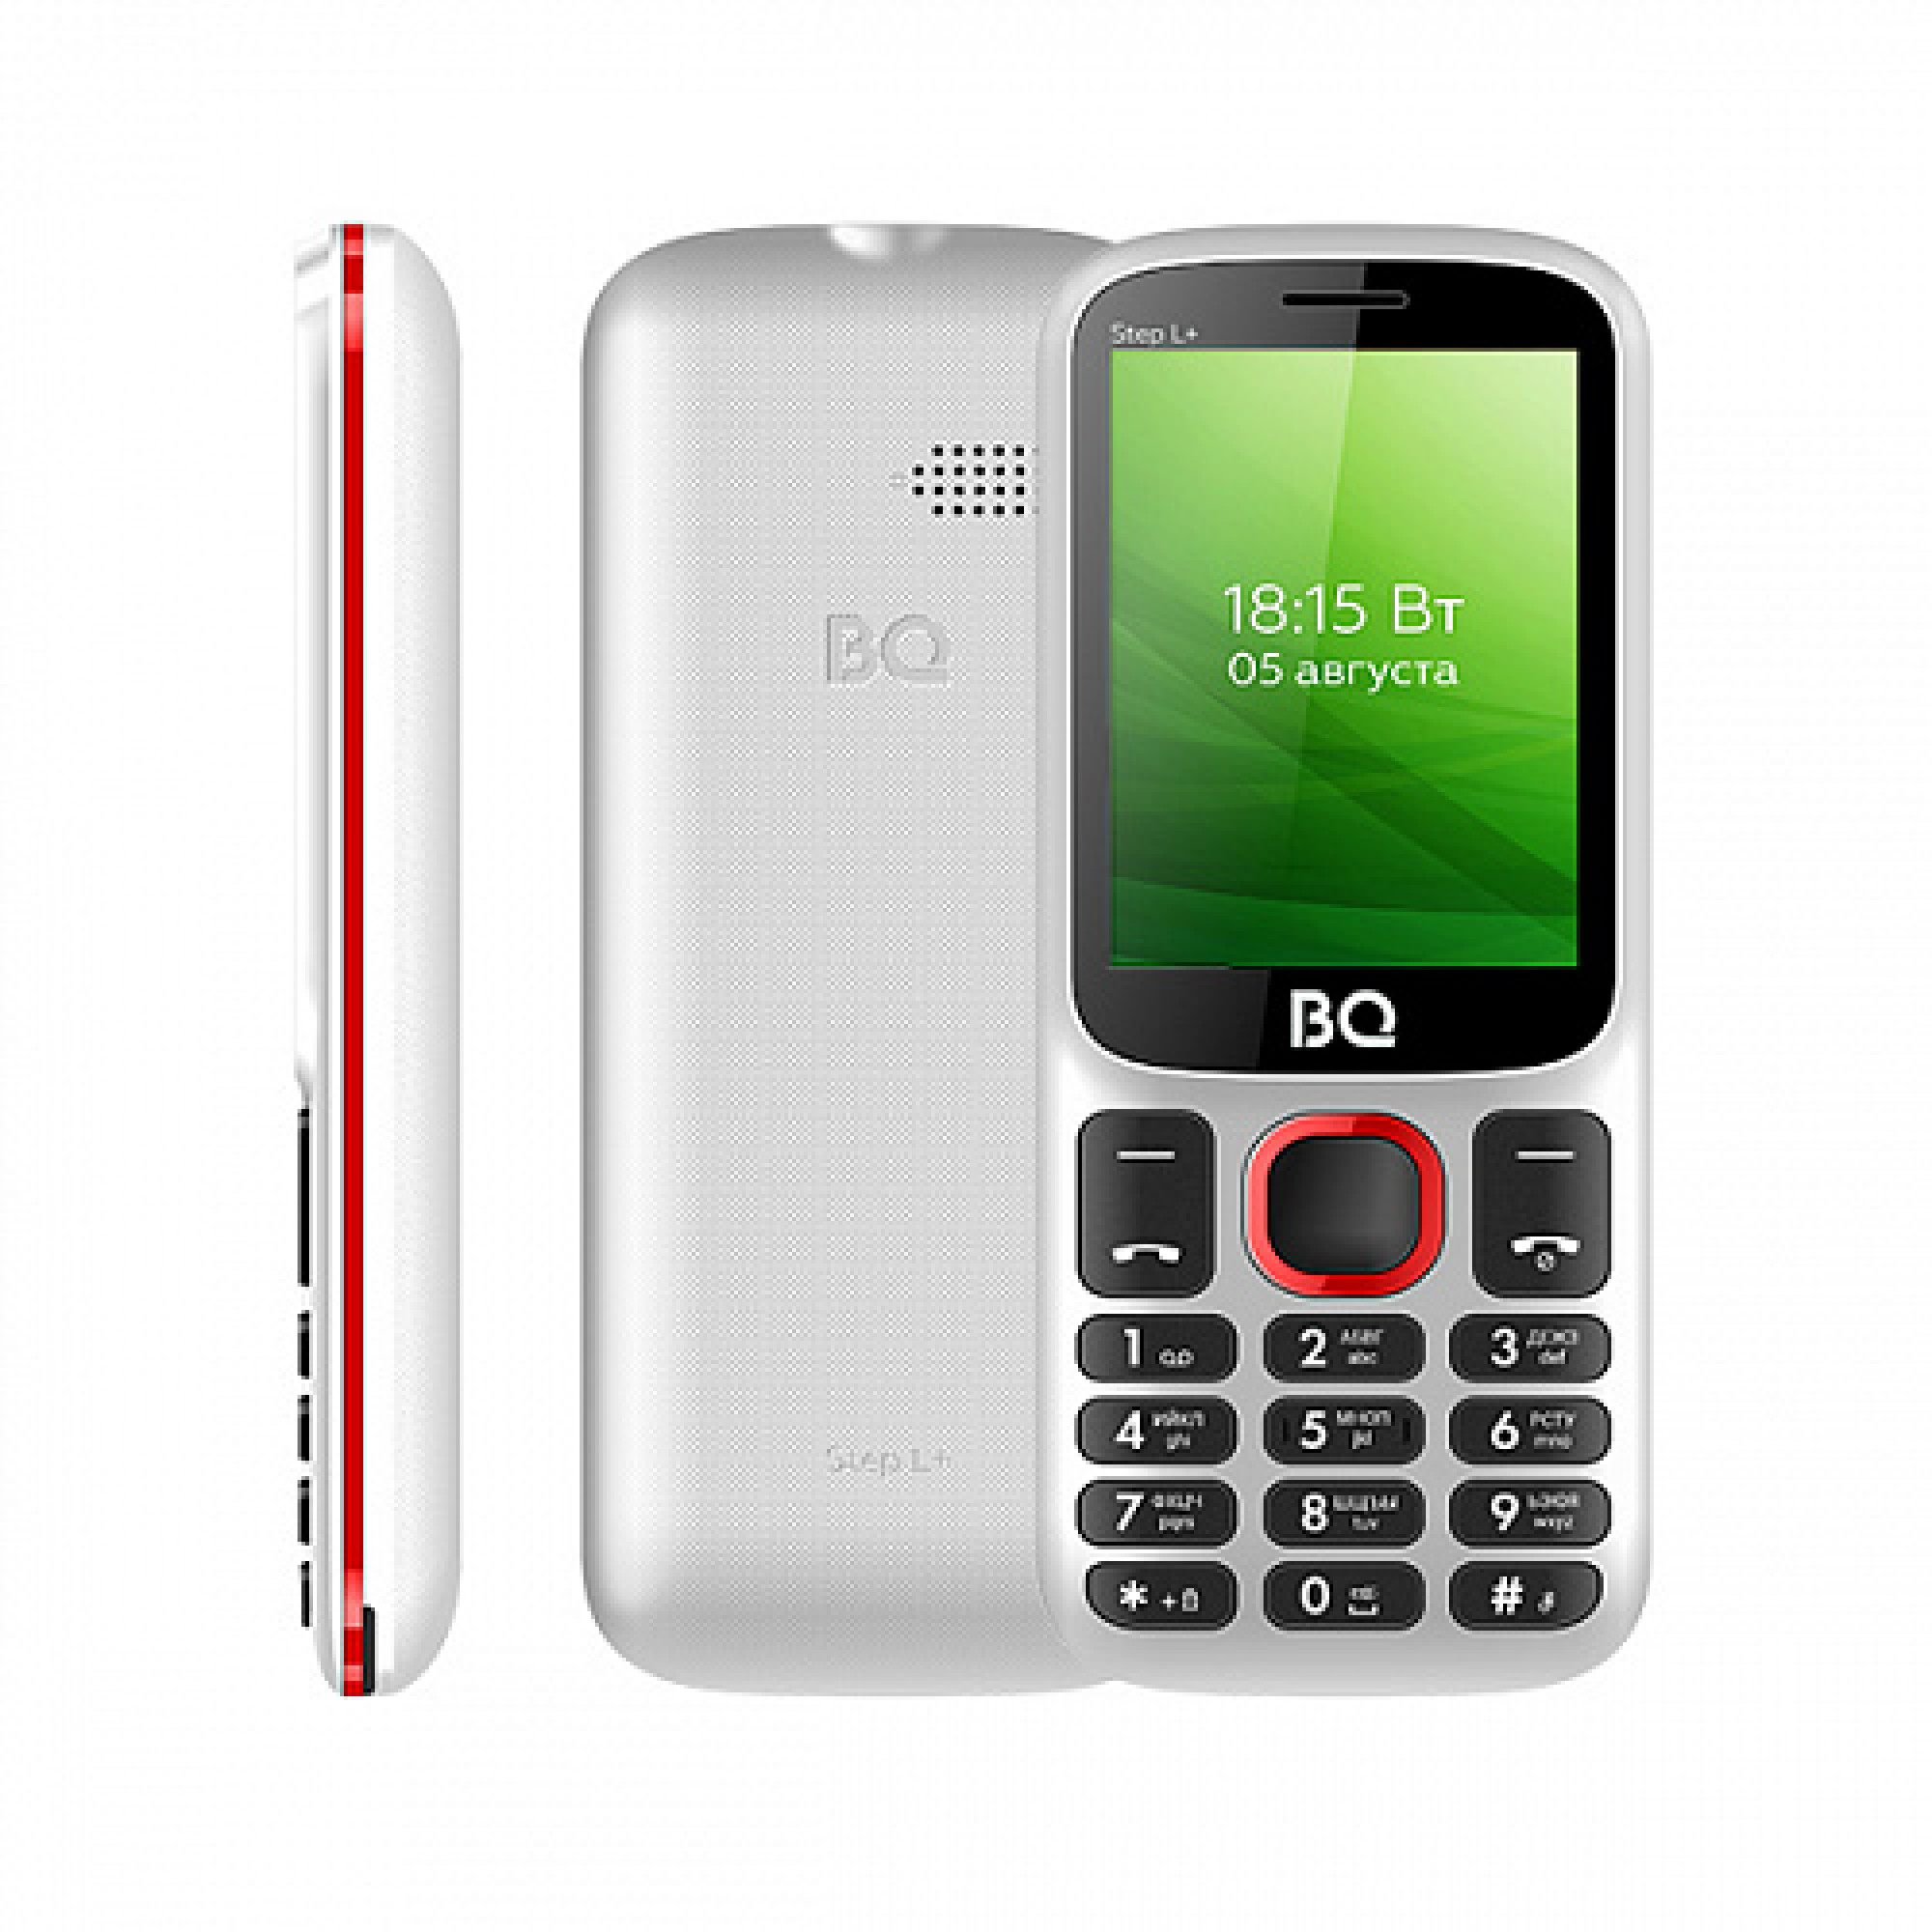 Мобильный телефон BQ BQ-2440 Step L+ (белый/красный)